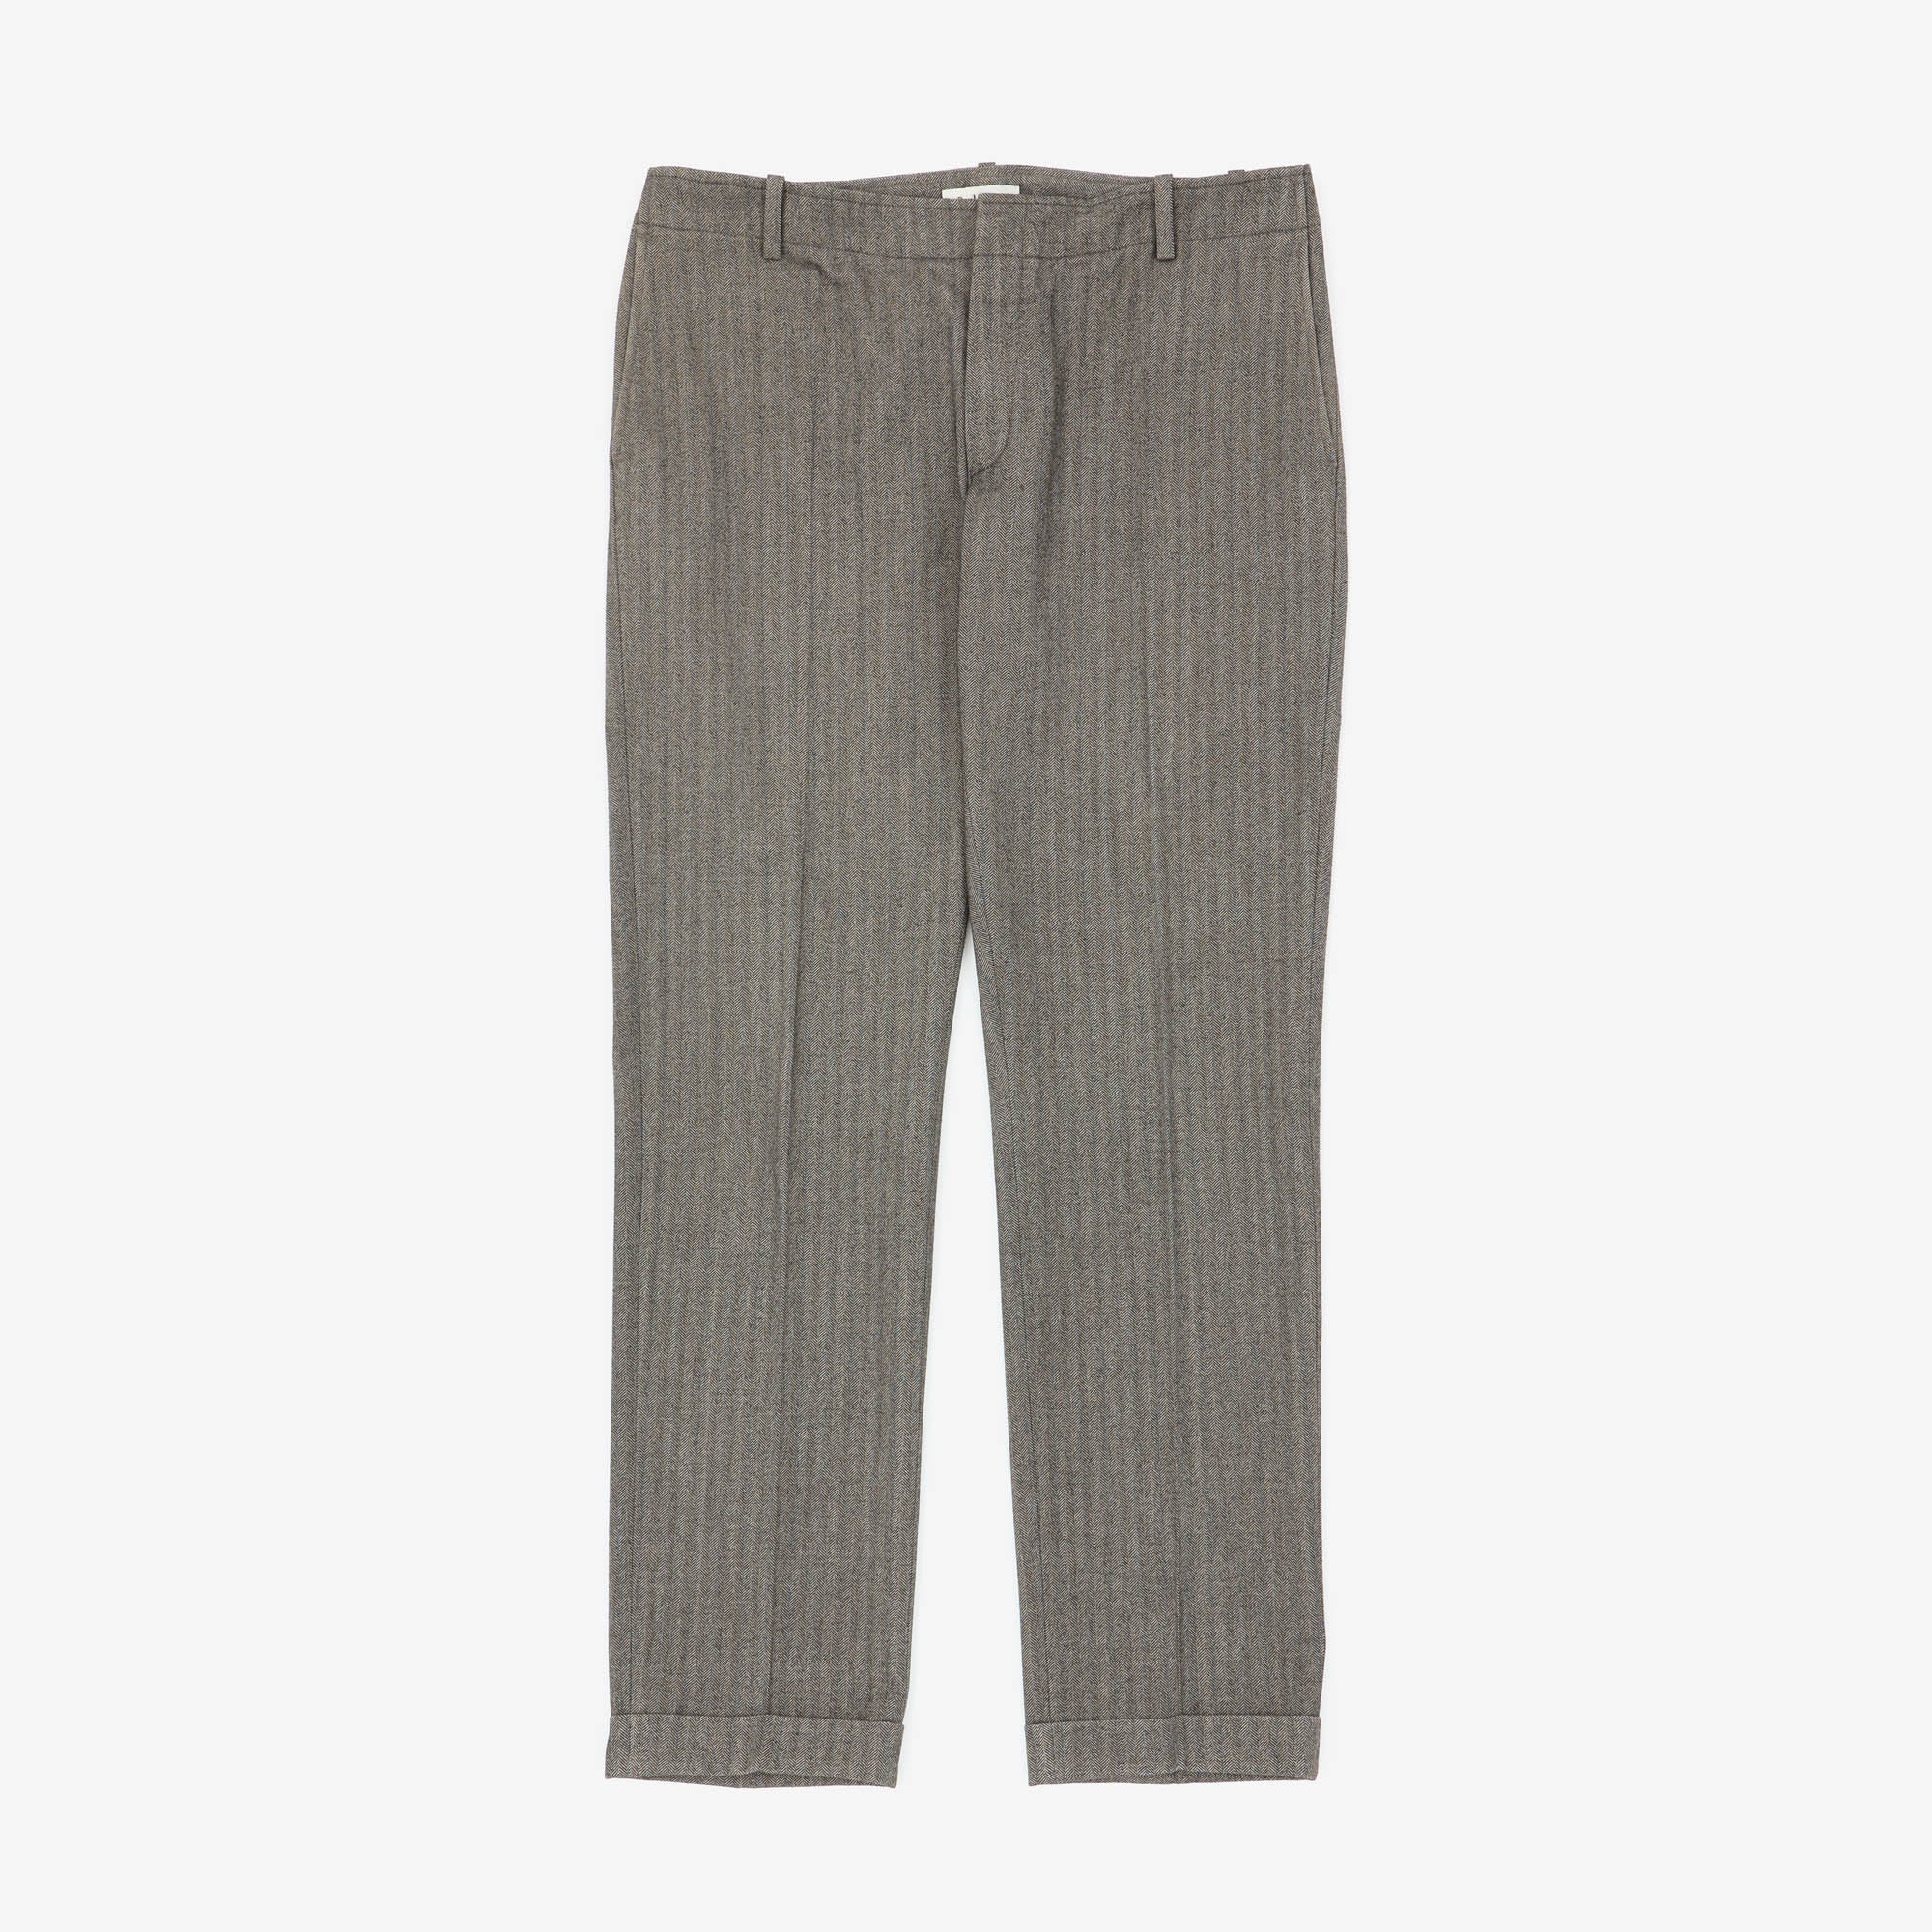 Herringbone Trousers (34 x 32)